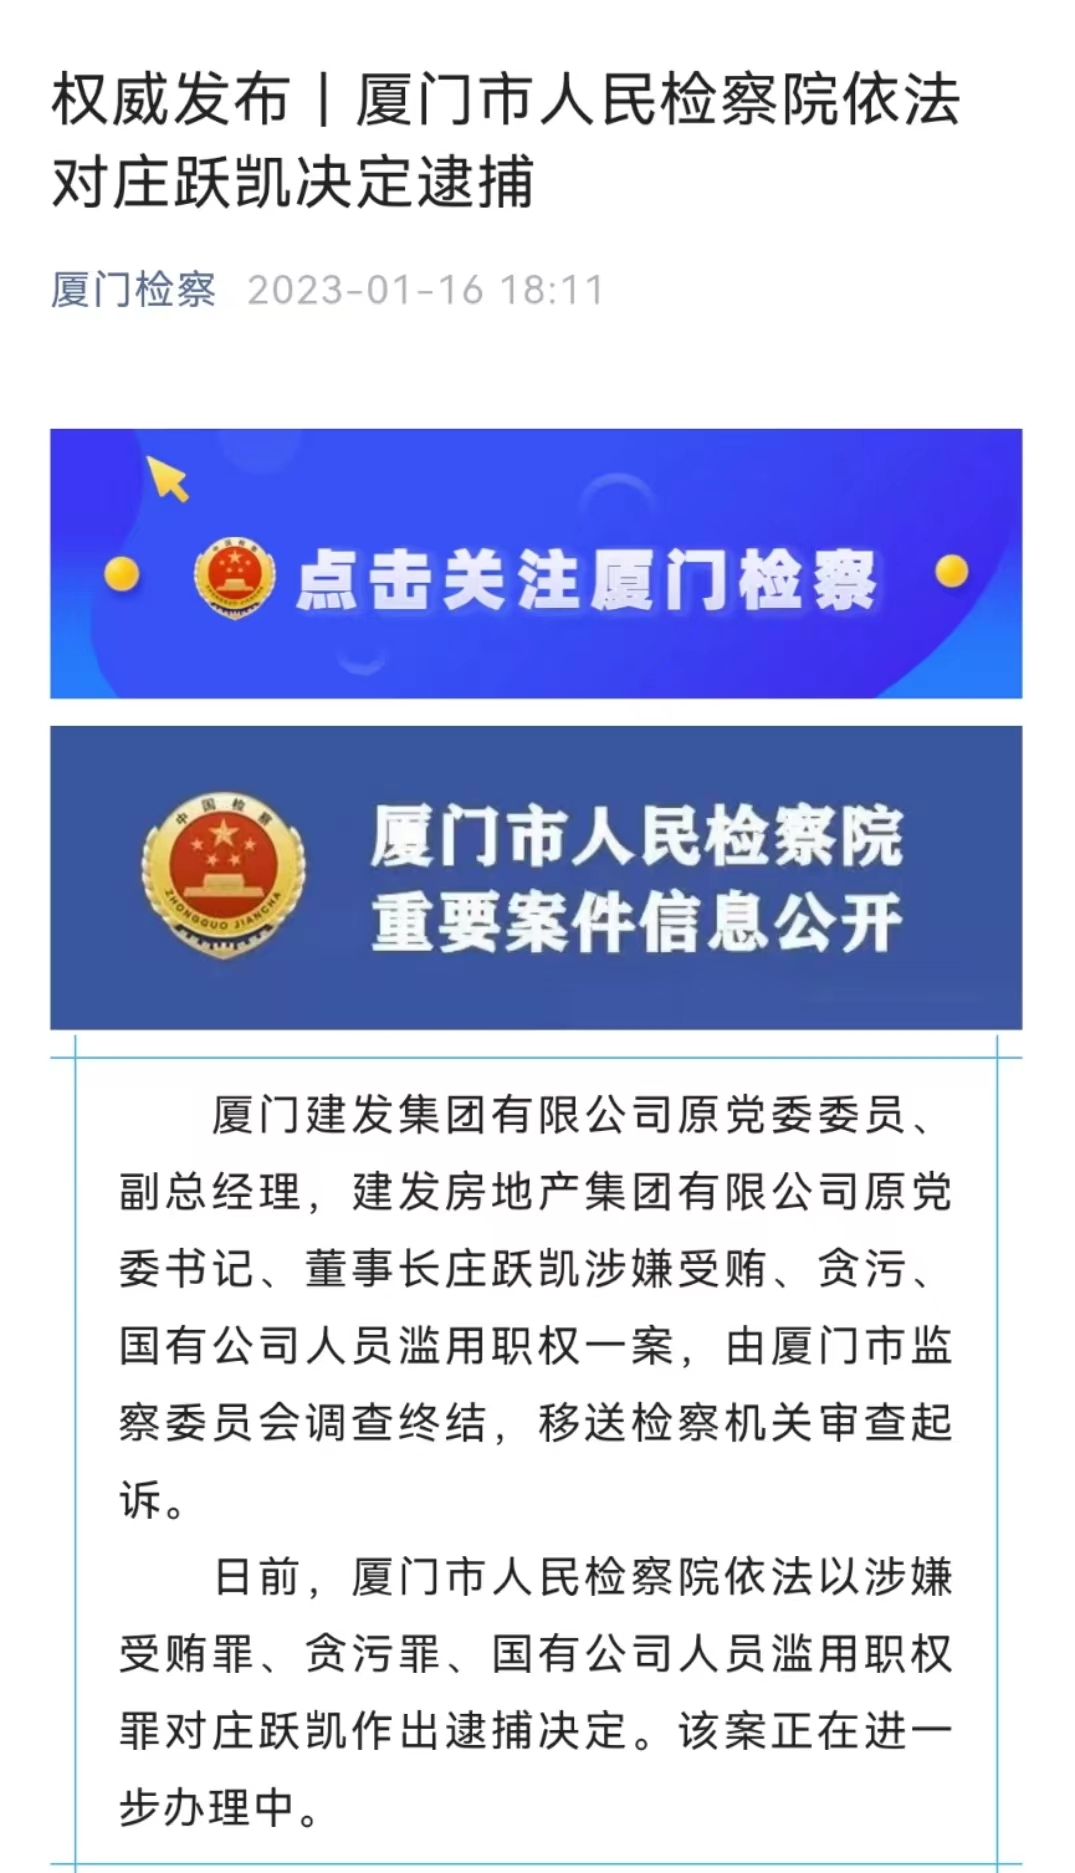 厦门建发集团庄跃凯、施震等两名原高管被依法逮捕